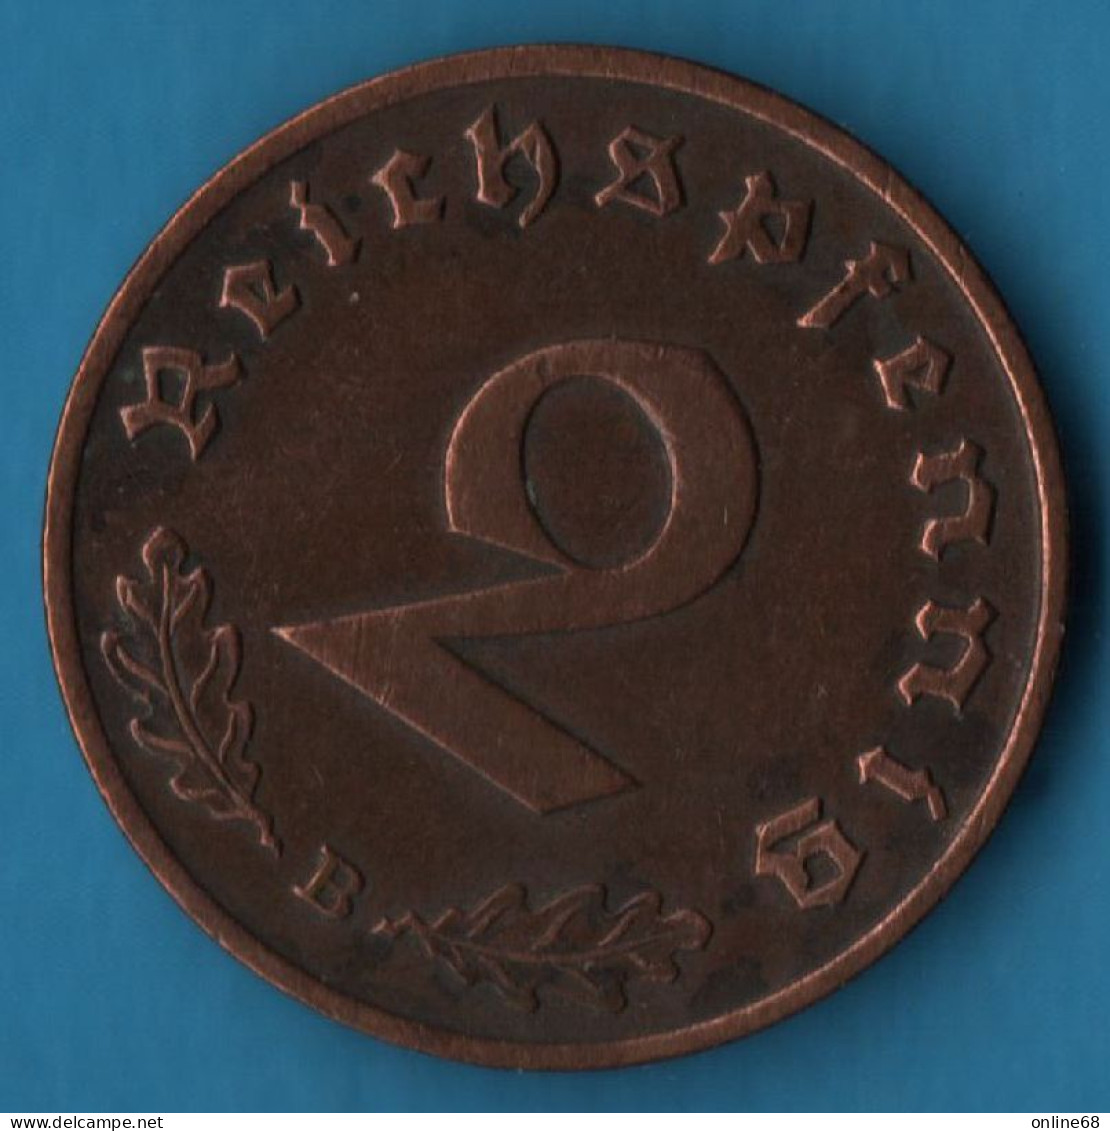 DEUTSCHES REICH 2 REICHSPFENNIG 1938 B KM# 90 Svastika - 2 Reichspfennig